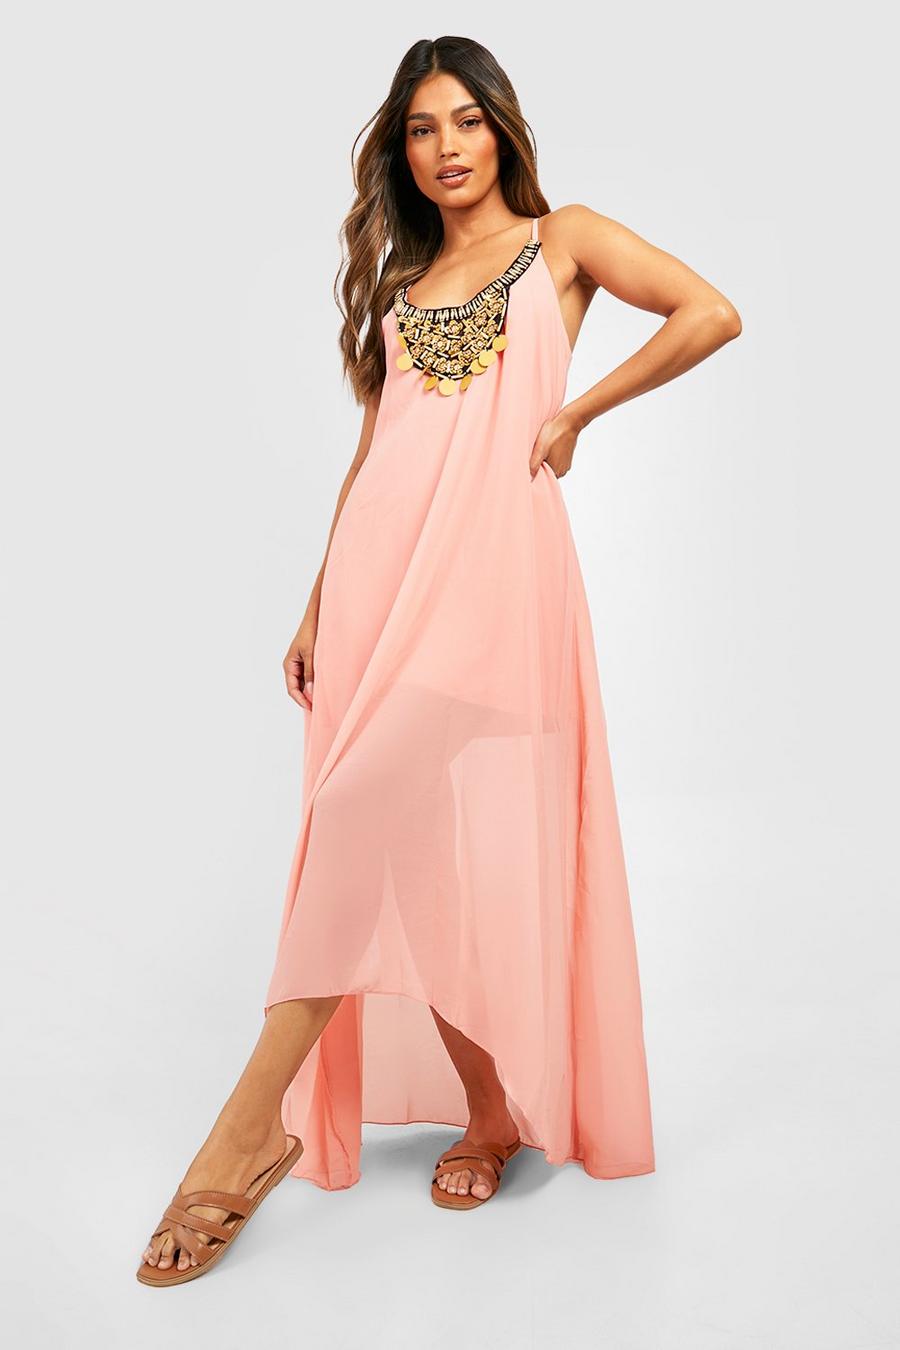 Weibliche Große Brust In Rosafarbenem Kleid Mit Tiefem Ausschnitt